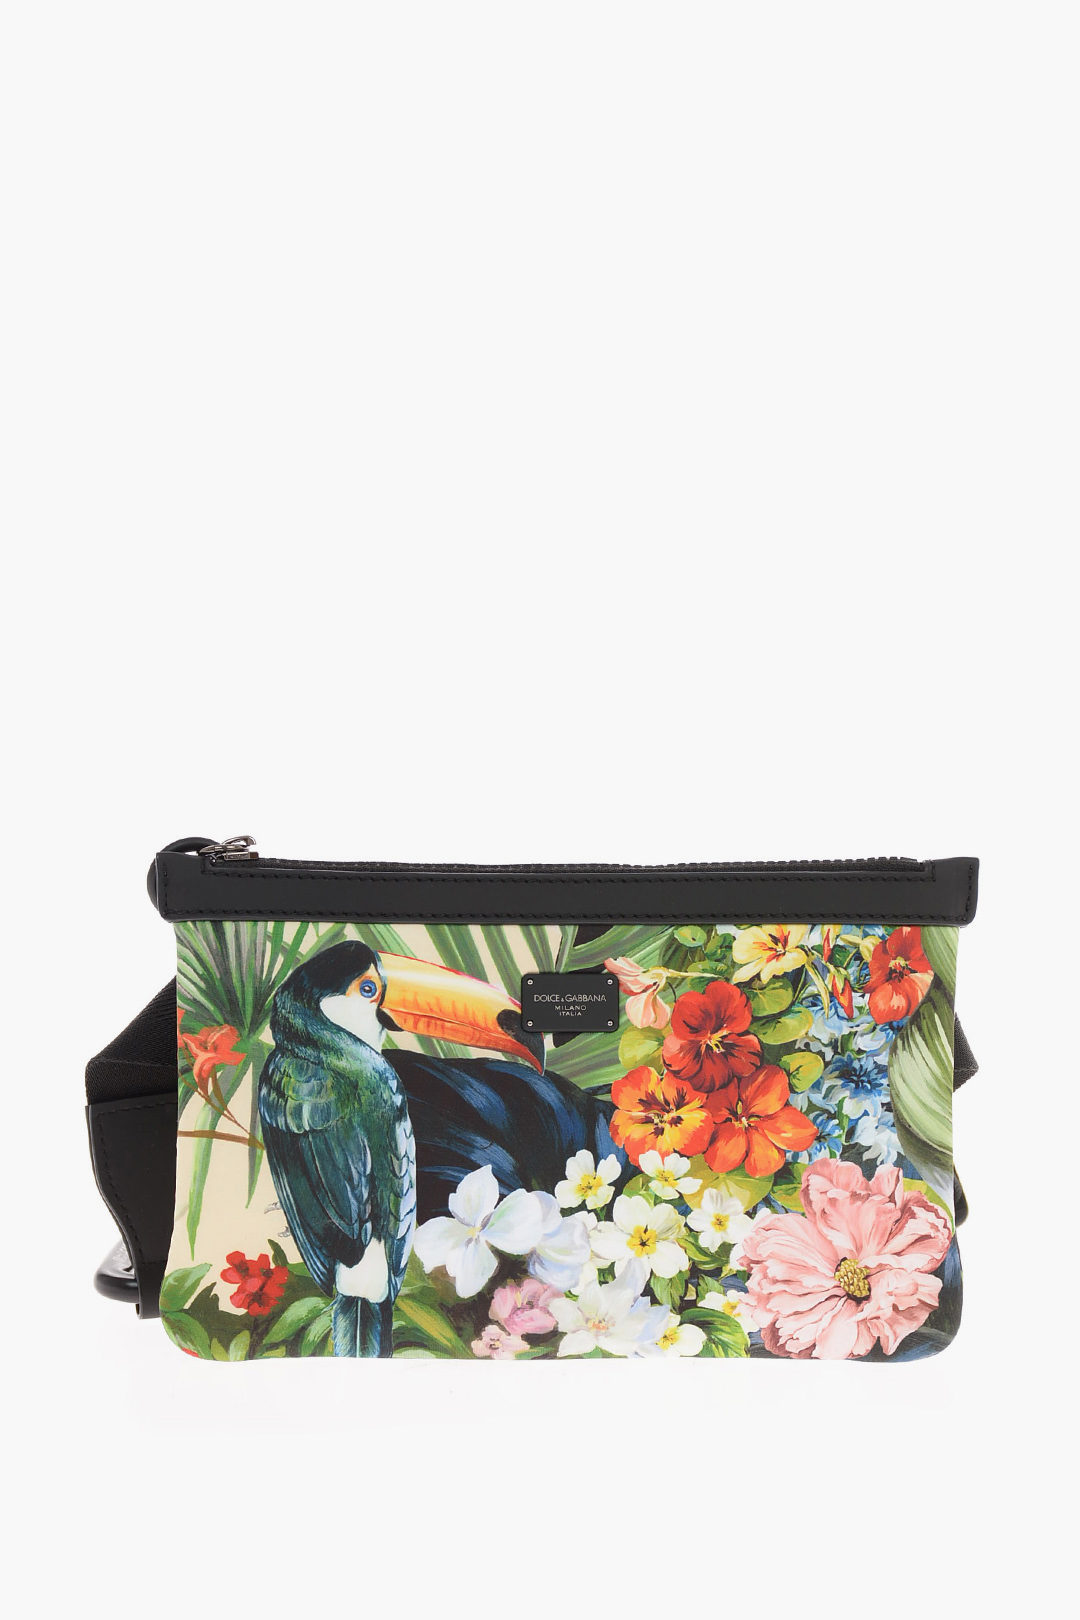 Dolce & Gabbana floral-printed neoprene Bum bag men - Glamood Outlet